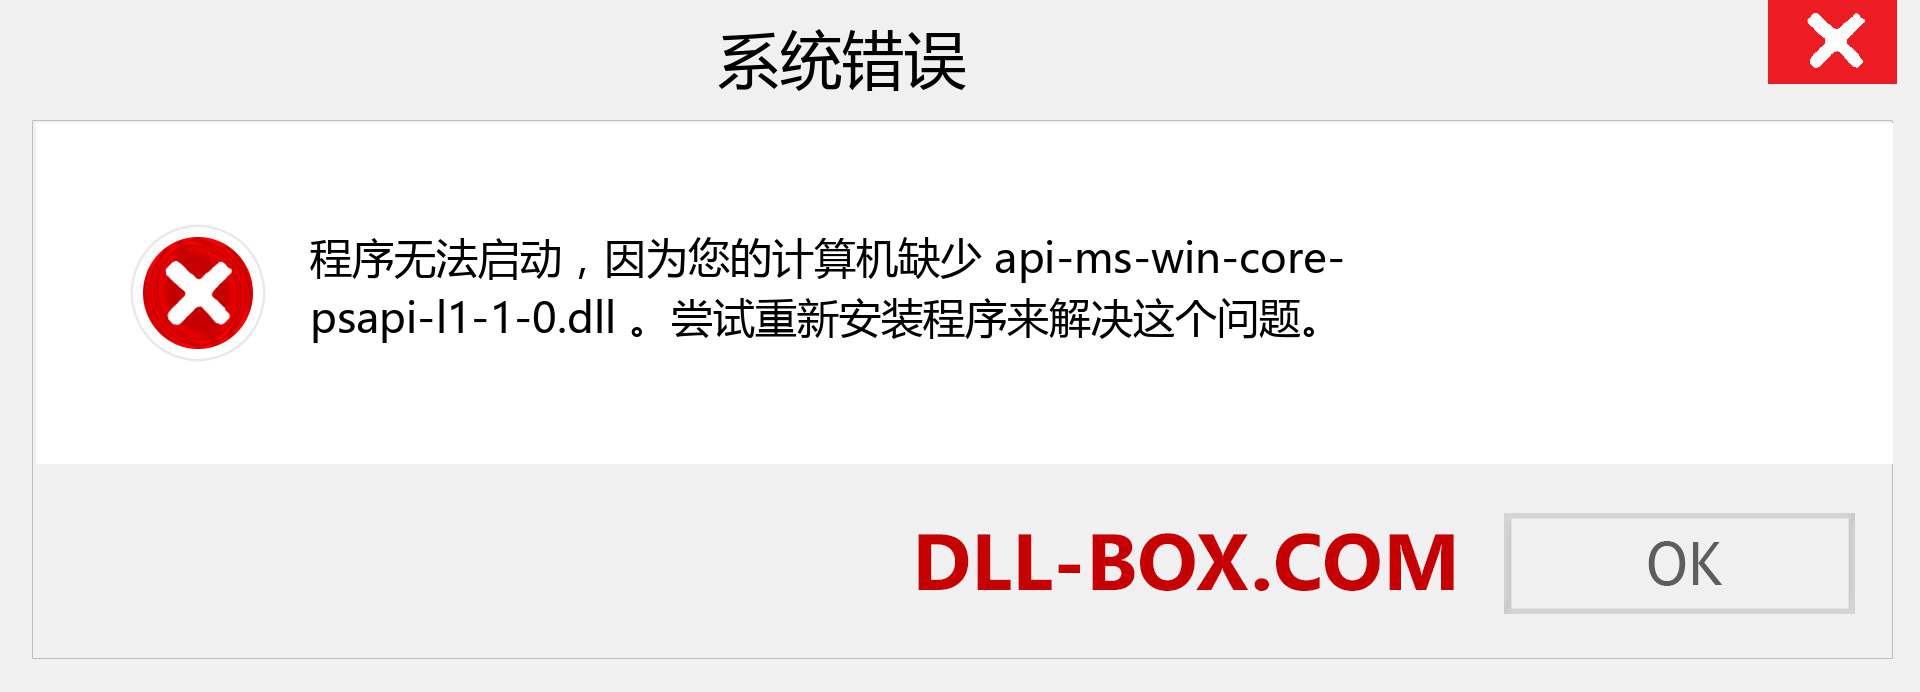 api-ms-win-core-psapi-l1-1-0.dll 文件丢失？。 适用于 Windows 7、8、10 的下载 - 修复 Windows、照片、图像上的 api-ms-win-core-psapi-l1-1-0 dll 丢失错误